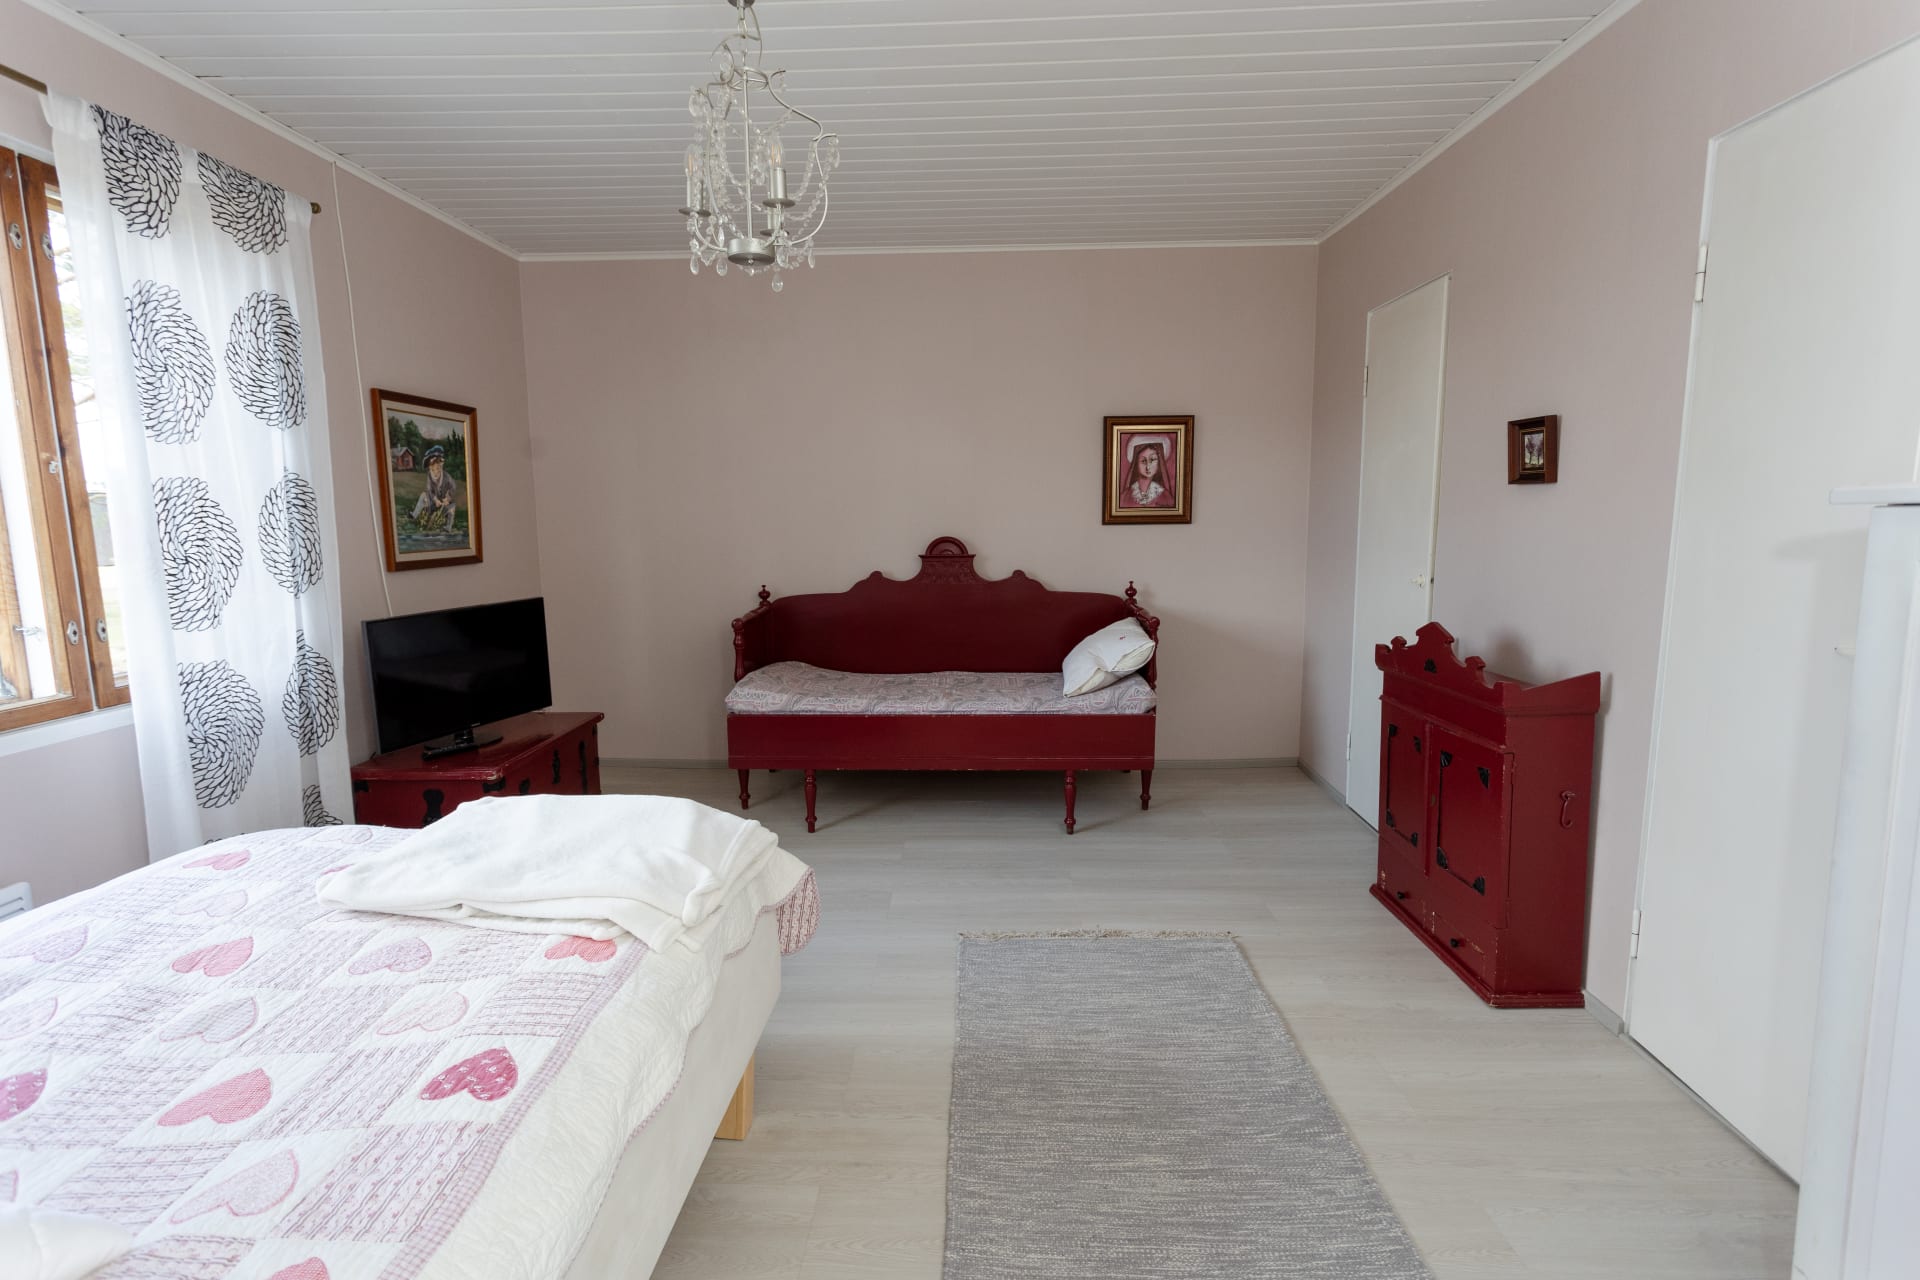 Makuuhuone 1 - 120 cm leveä sänky ja 160 cm pitkä puusänky